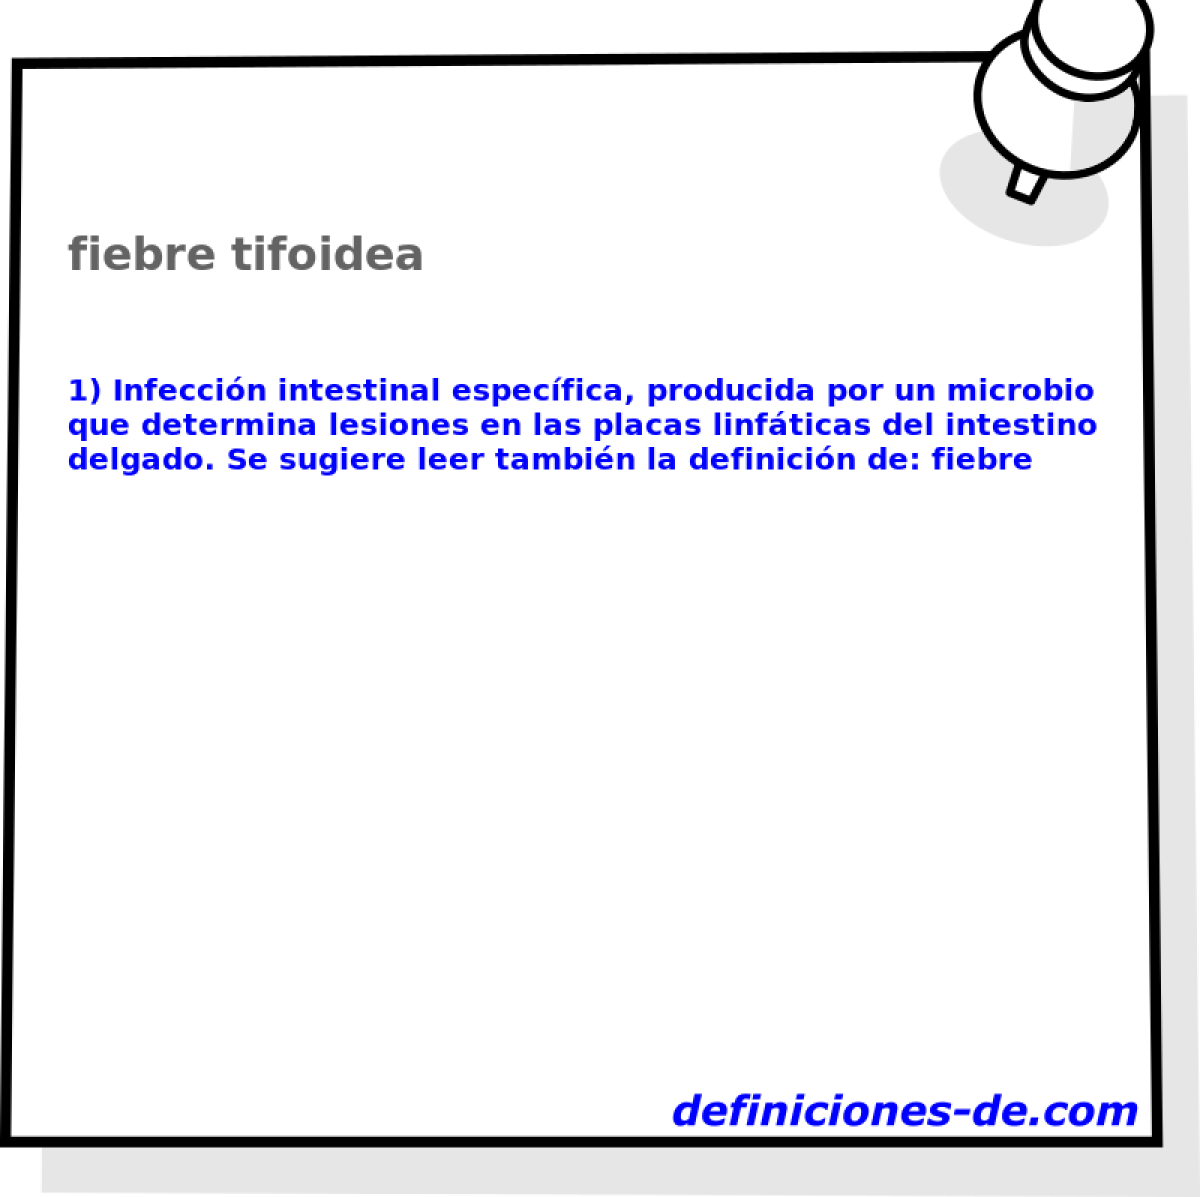 fiebre tifoidea 